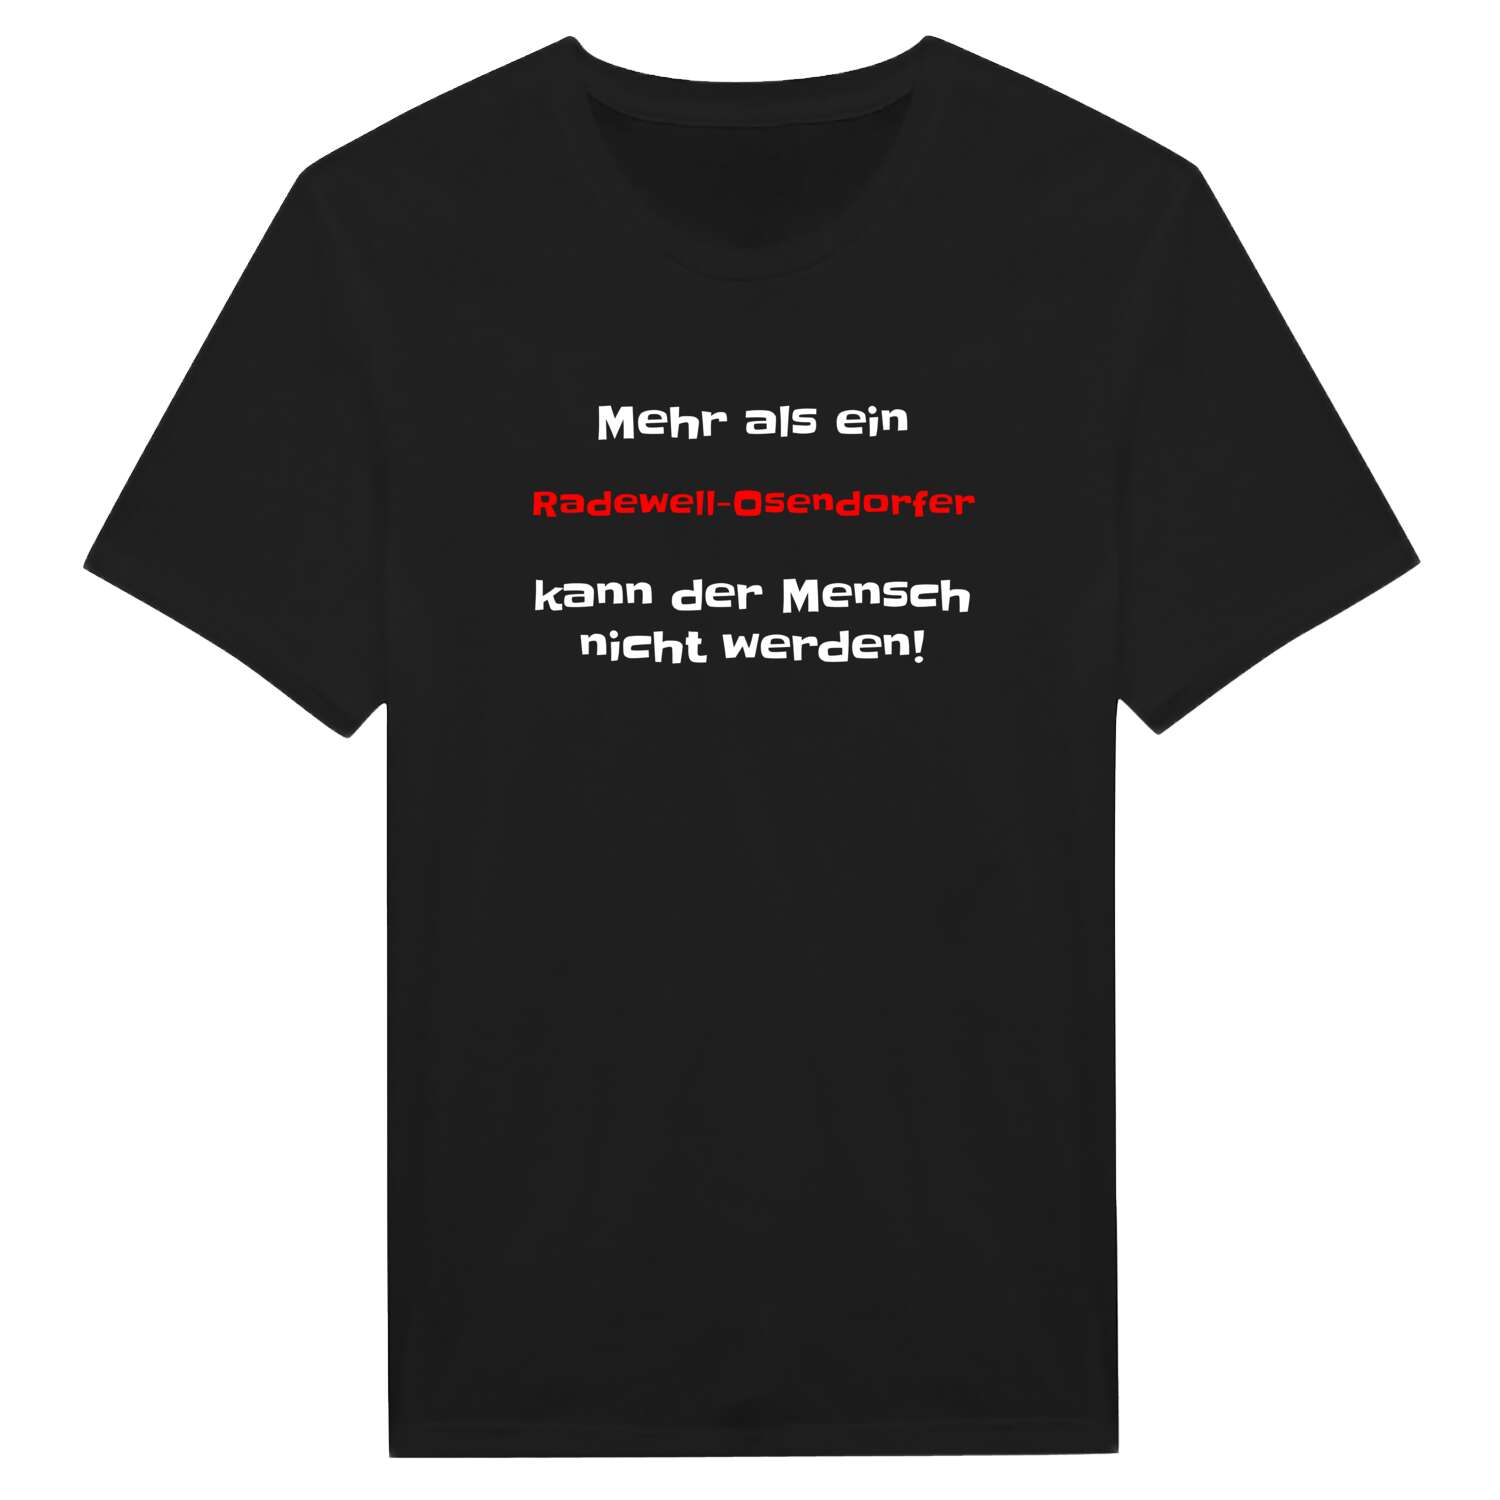 Radewell-Osendorf T-Shirt »Mehr als ein«